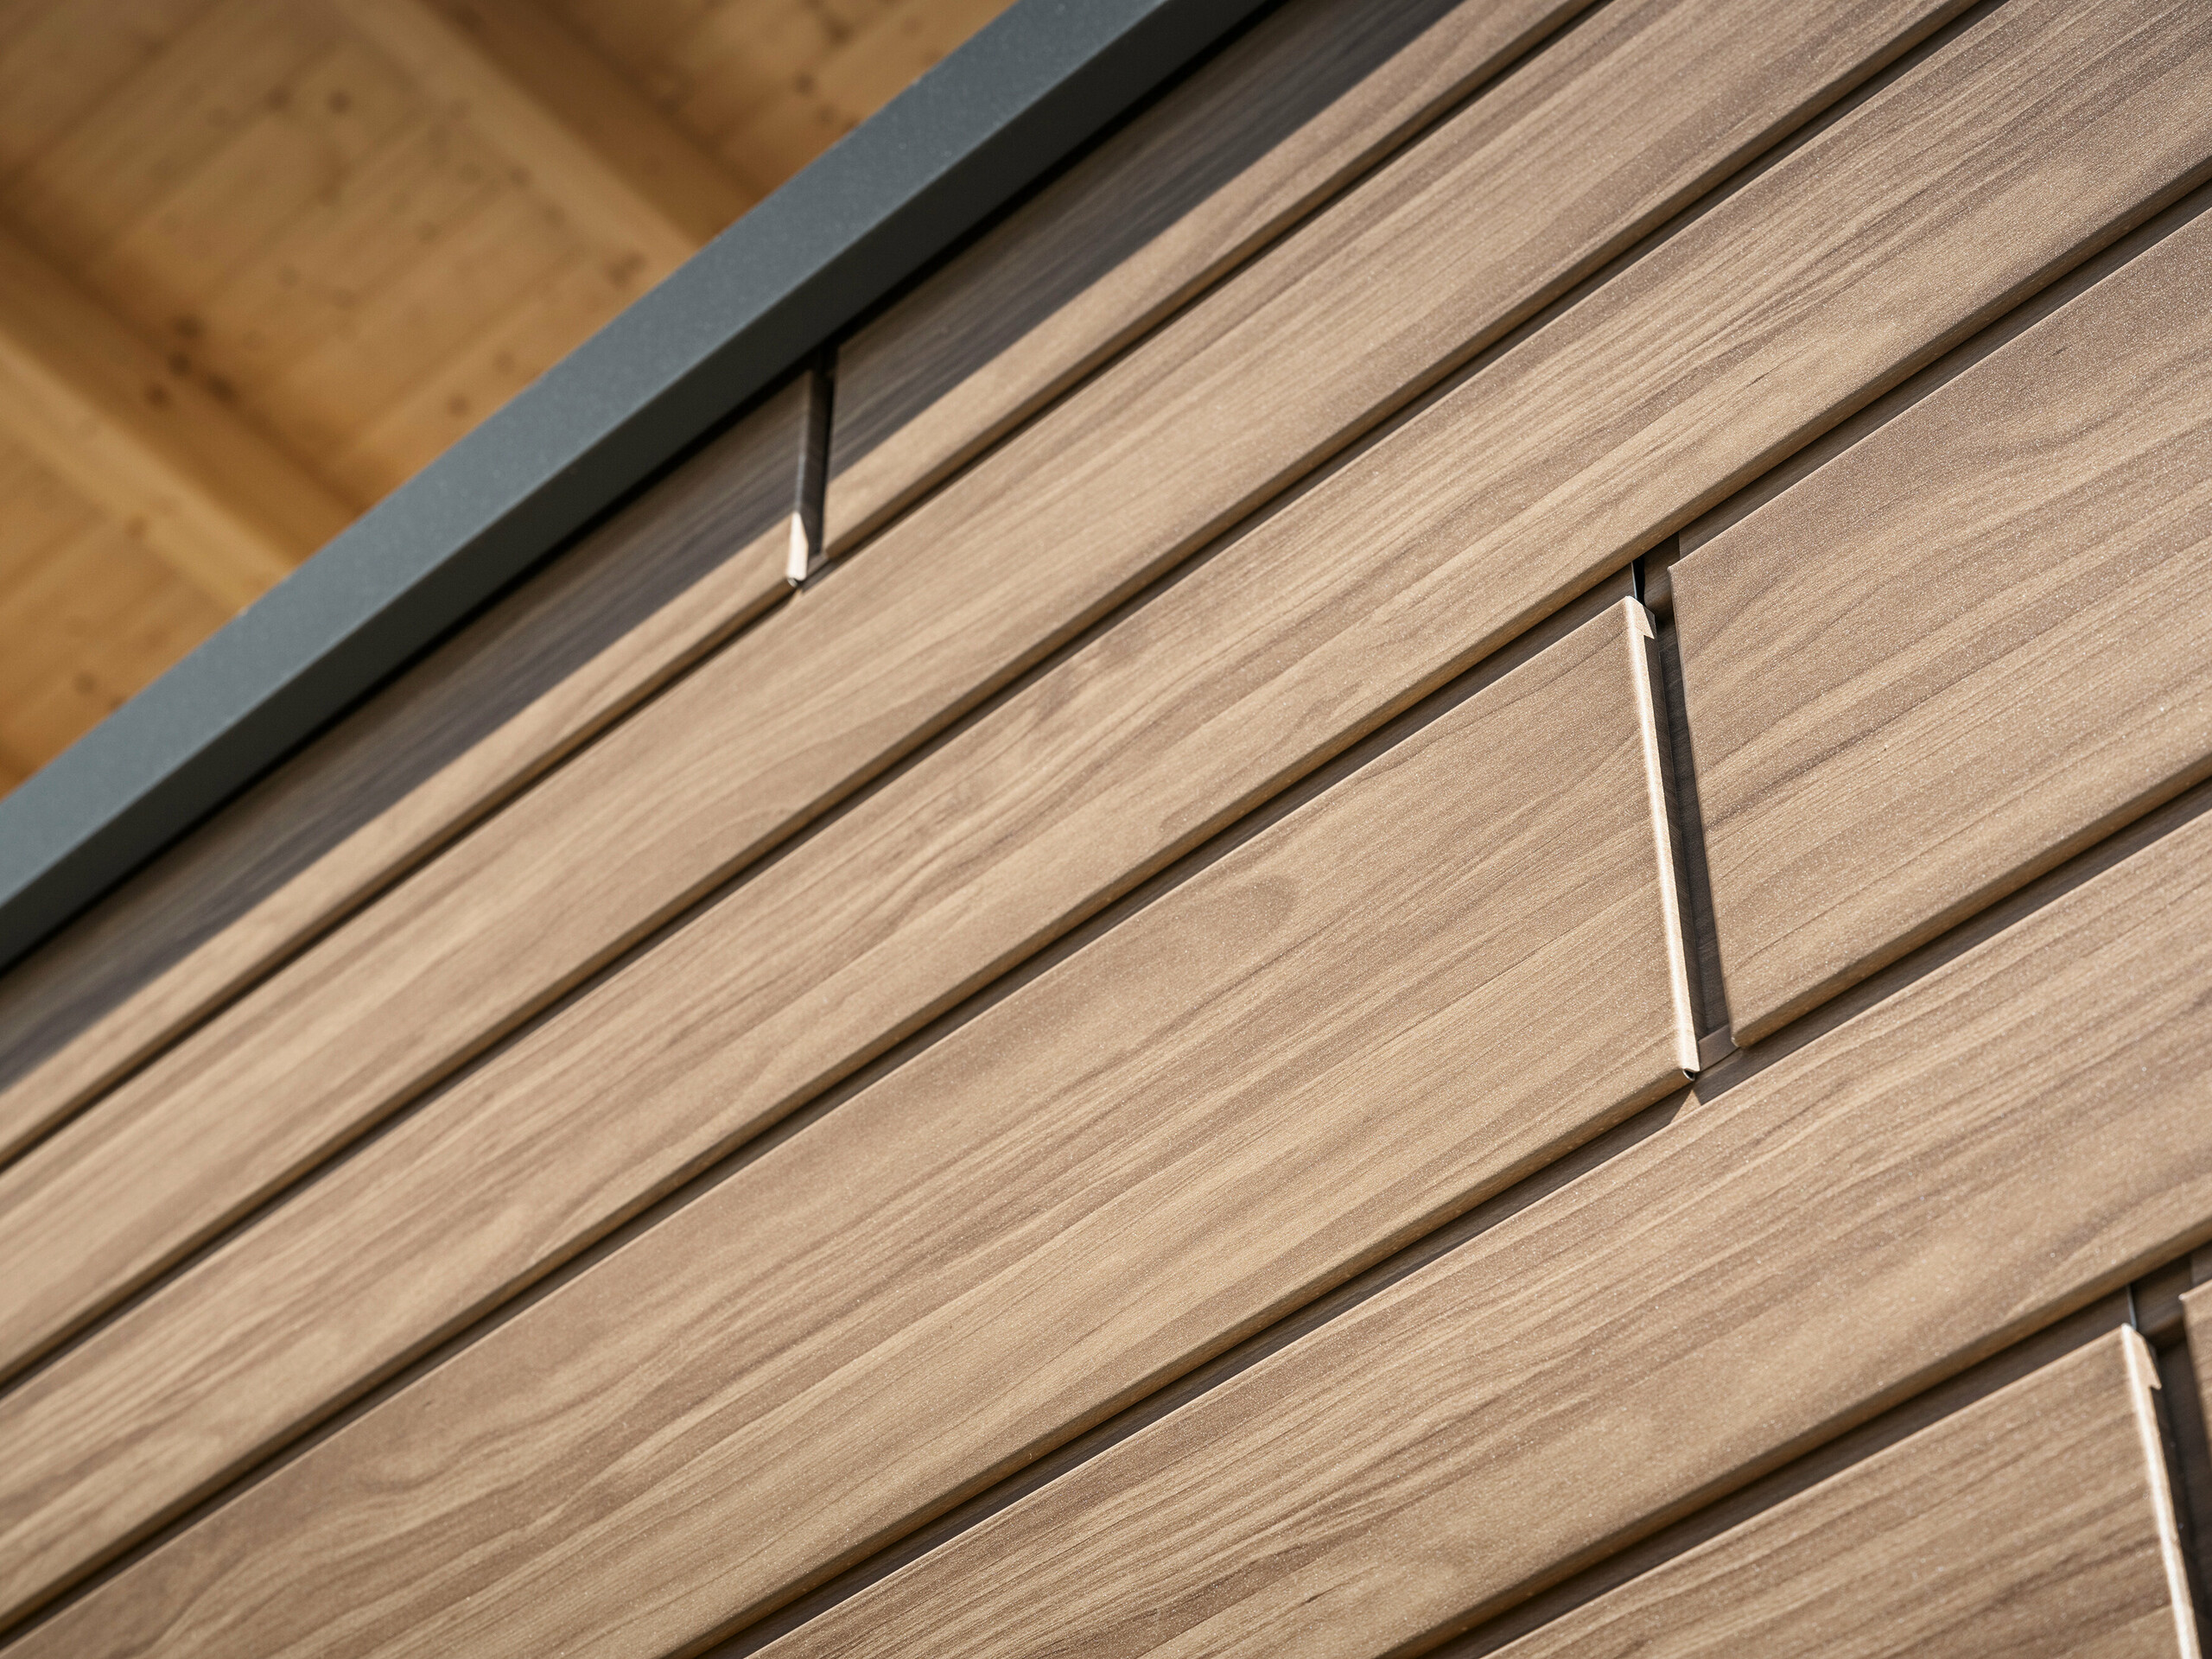 Detailansicht einer Fassadenverkleidung mit PREFA Sidings in Holzoptik. Die Sidings haben eine Materialdicke von 1,2 mm für glatte Oberflächen bis zu einer Breite von 400 mm und 1,5 mm für Breiten von 500 und 600 mm.